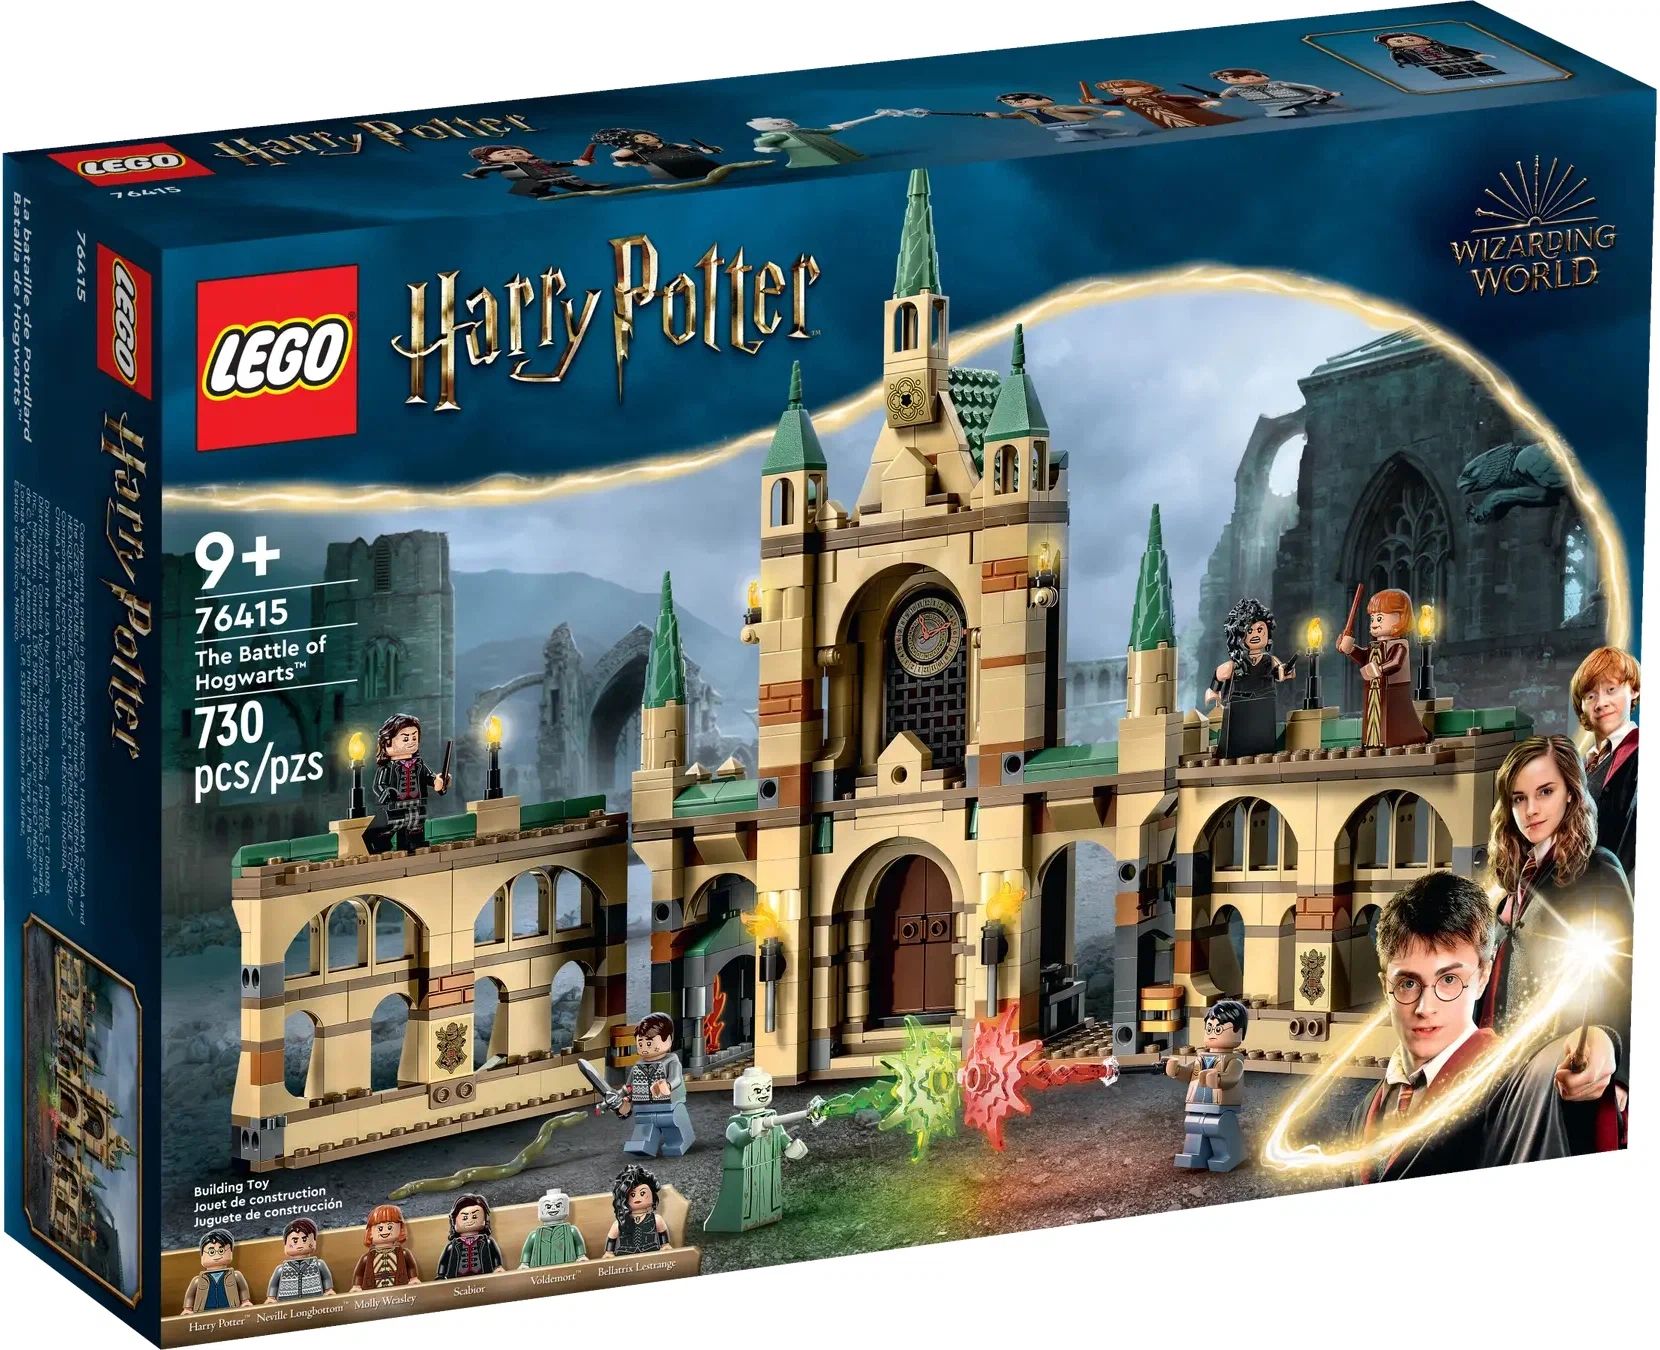 Конструктор LEGO Harry Potter Битва за Хогвартс, 730 деталей, 9+, 76415 конструктор lego harry potter часовая башня хогвартса